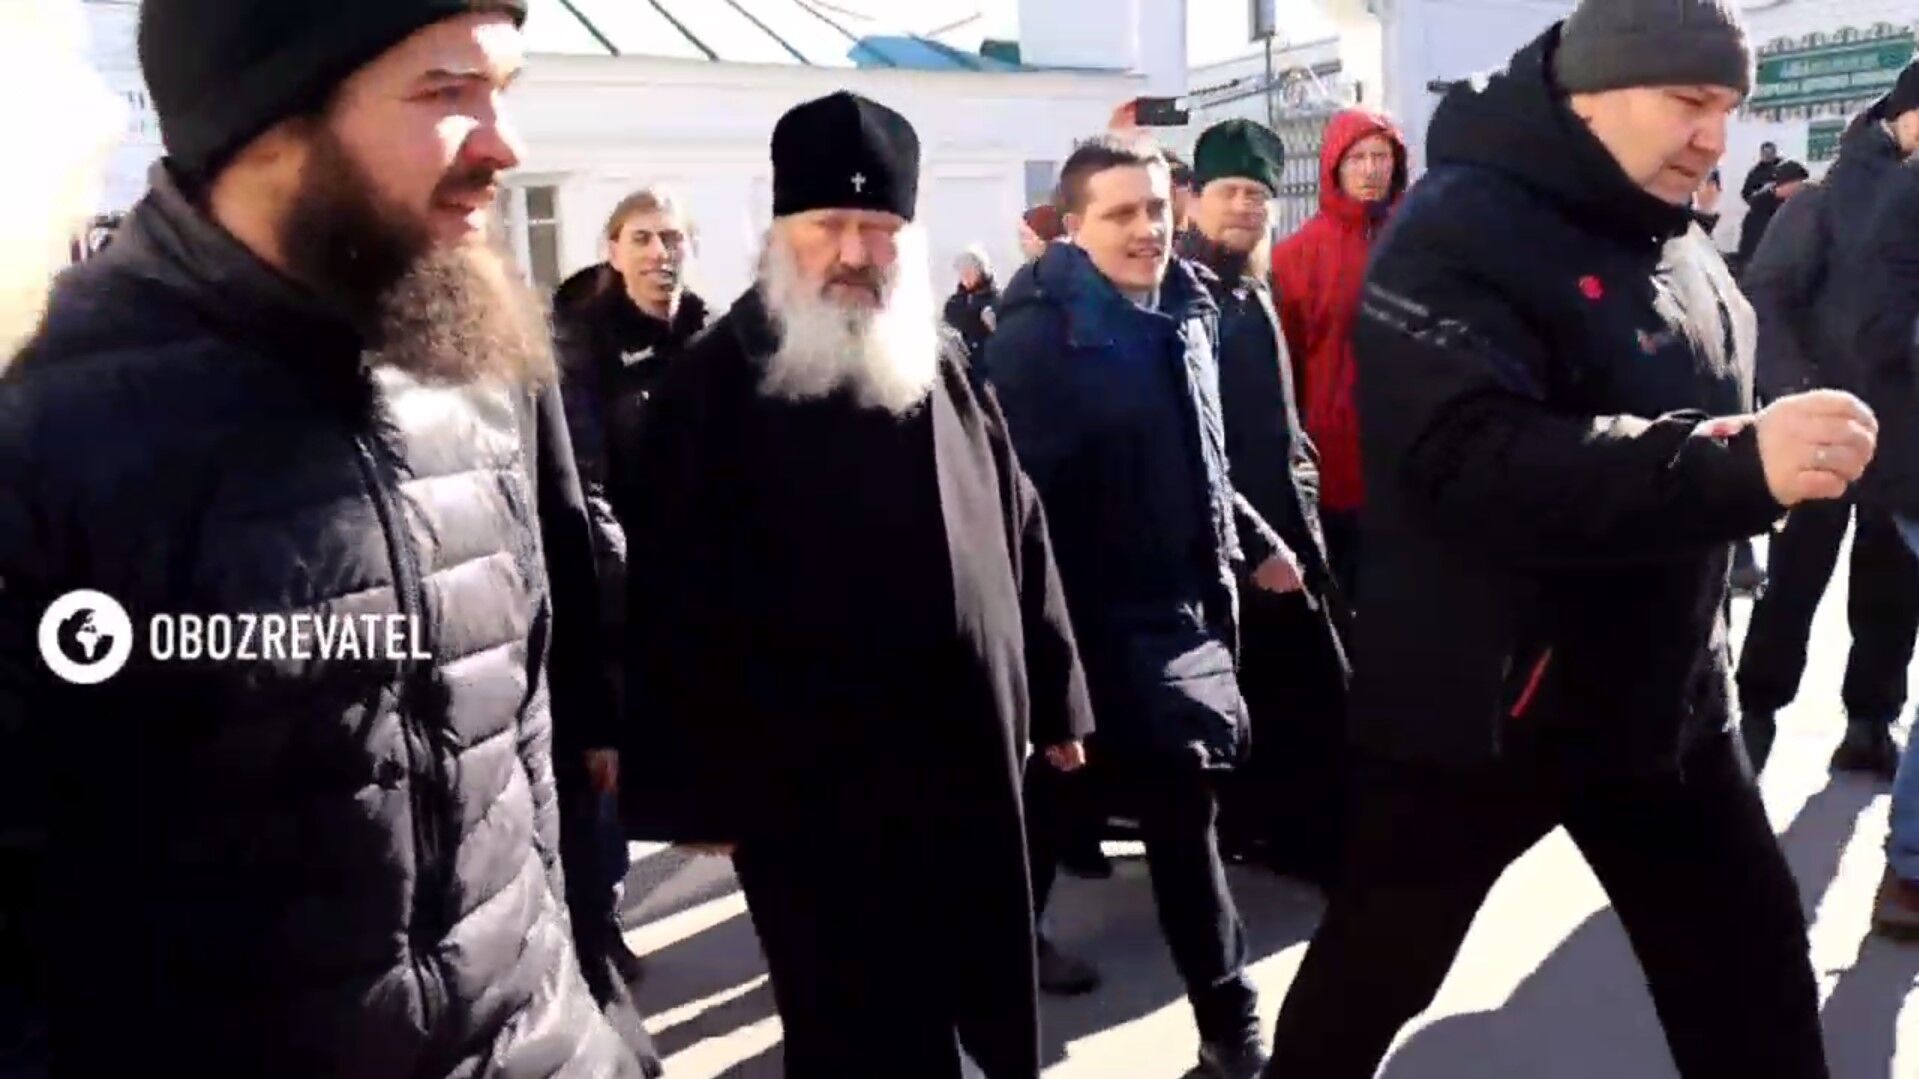 В Киево-Печерской лавре комиссию Минкульта не пустили в храм: бывший наместник Павел угрожал СМИ палкой. Фото и видео